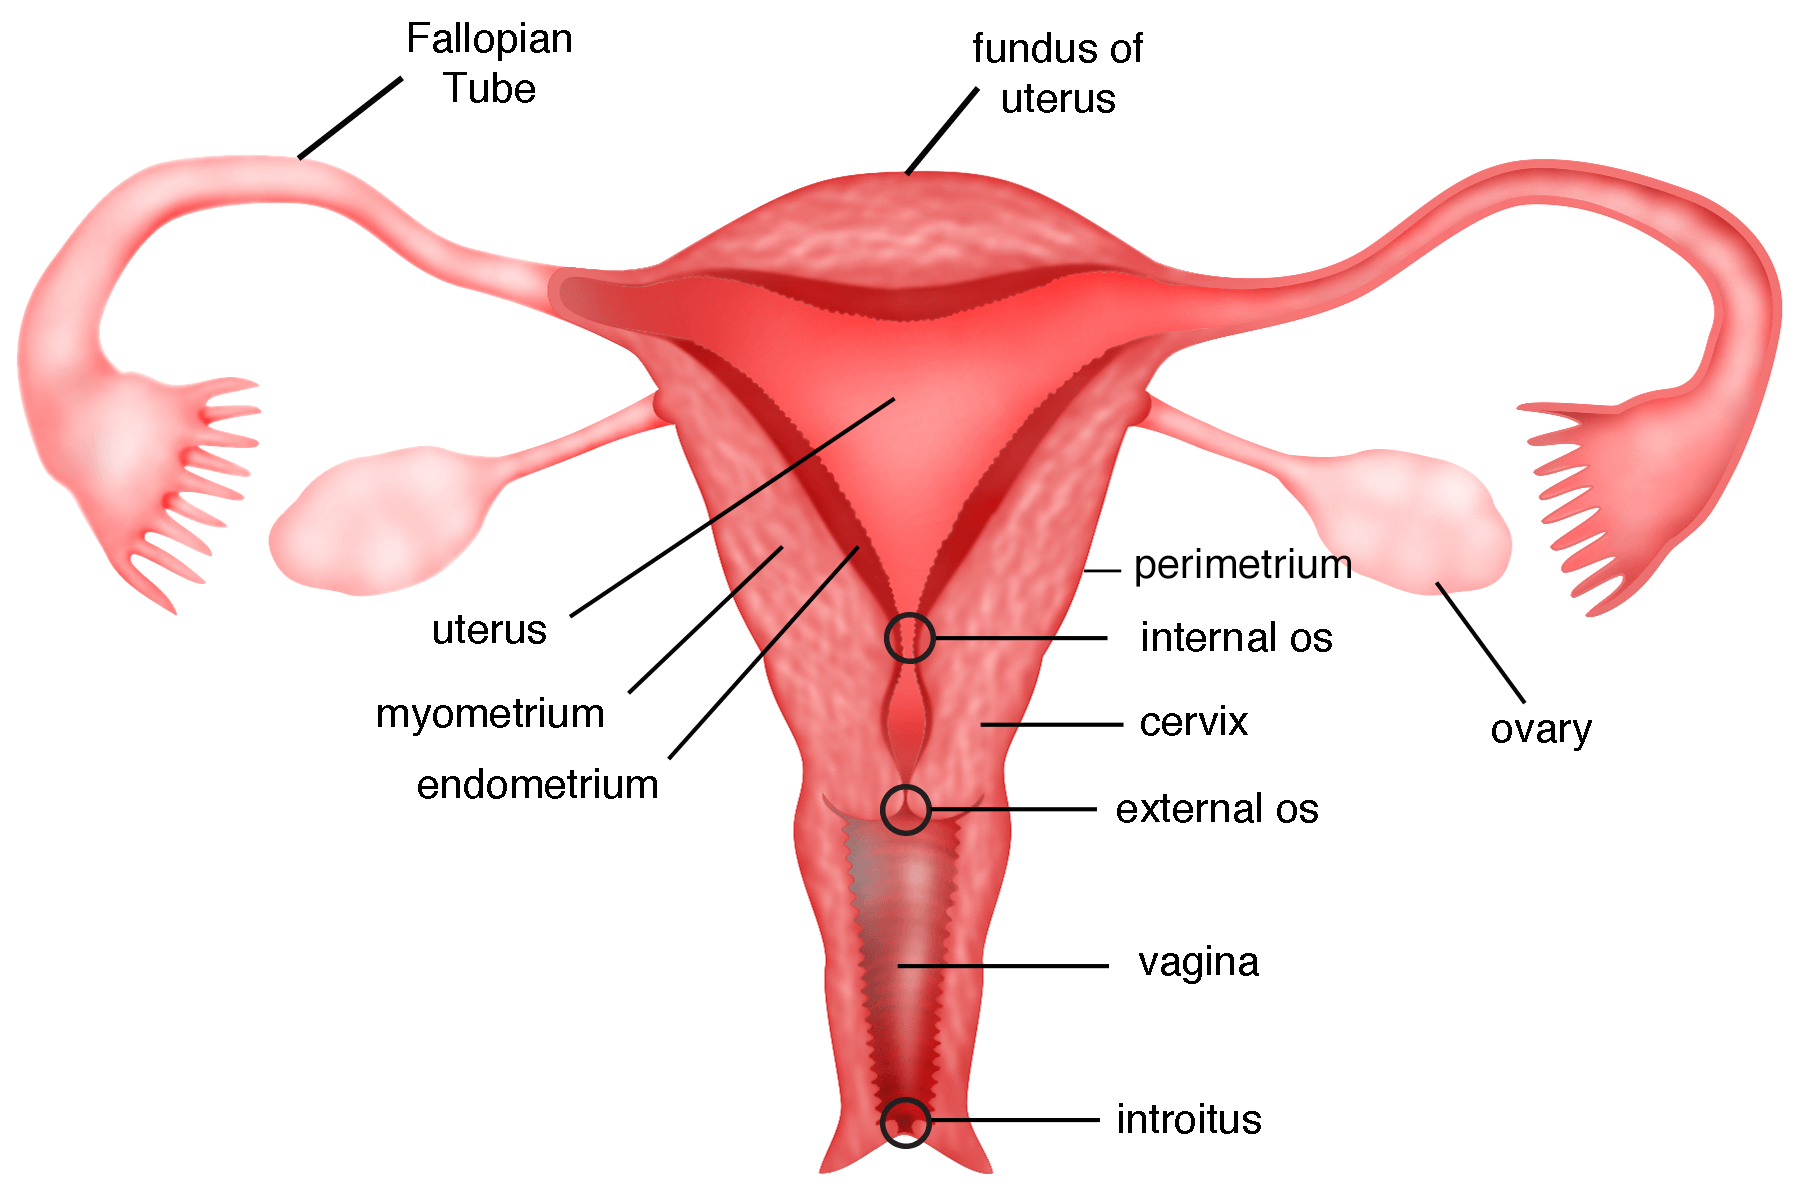 uterus adalah